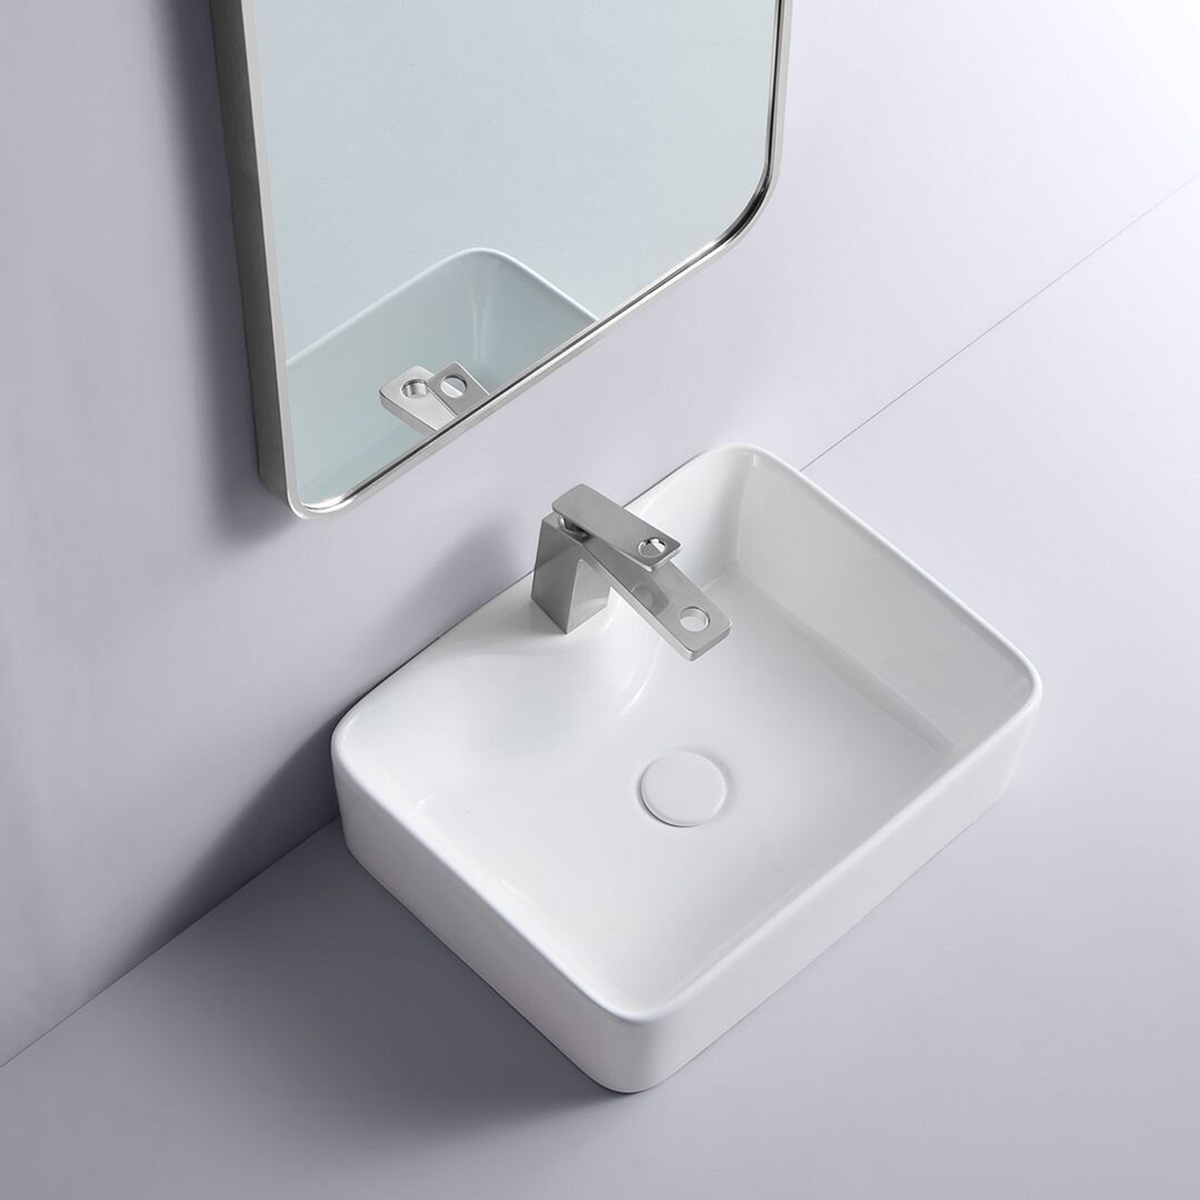 تصميم فريد من نوعه لأحواض غسيل اليد كونترتوب حوض غسيل مصنوع يدويًا من السيراميك فوق حوض المنضدة